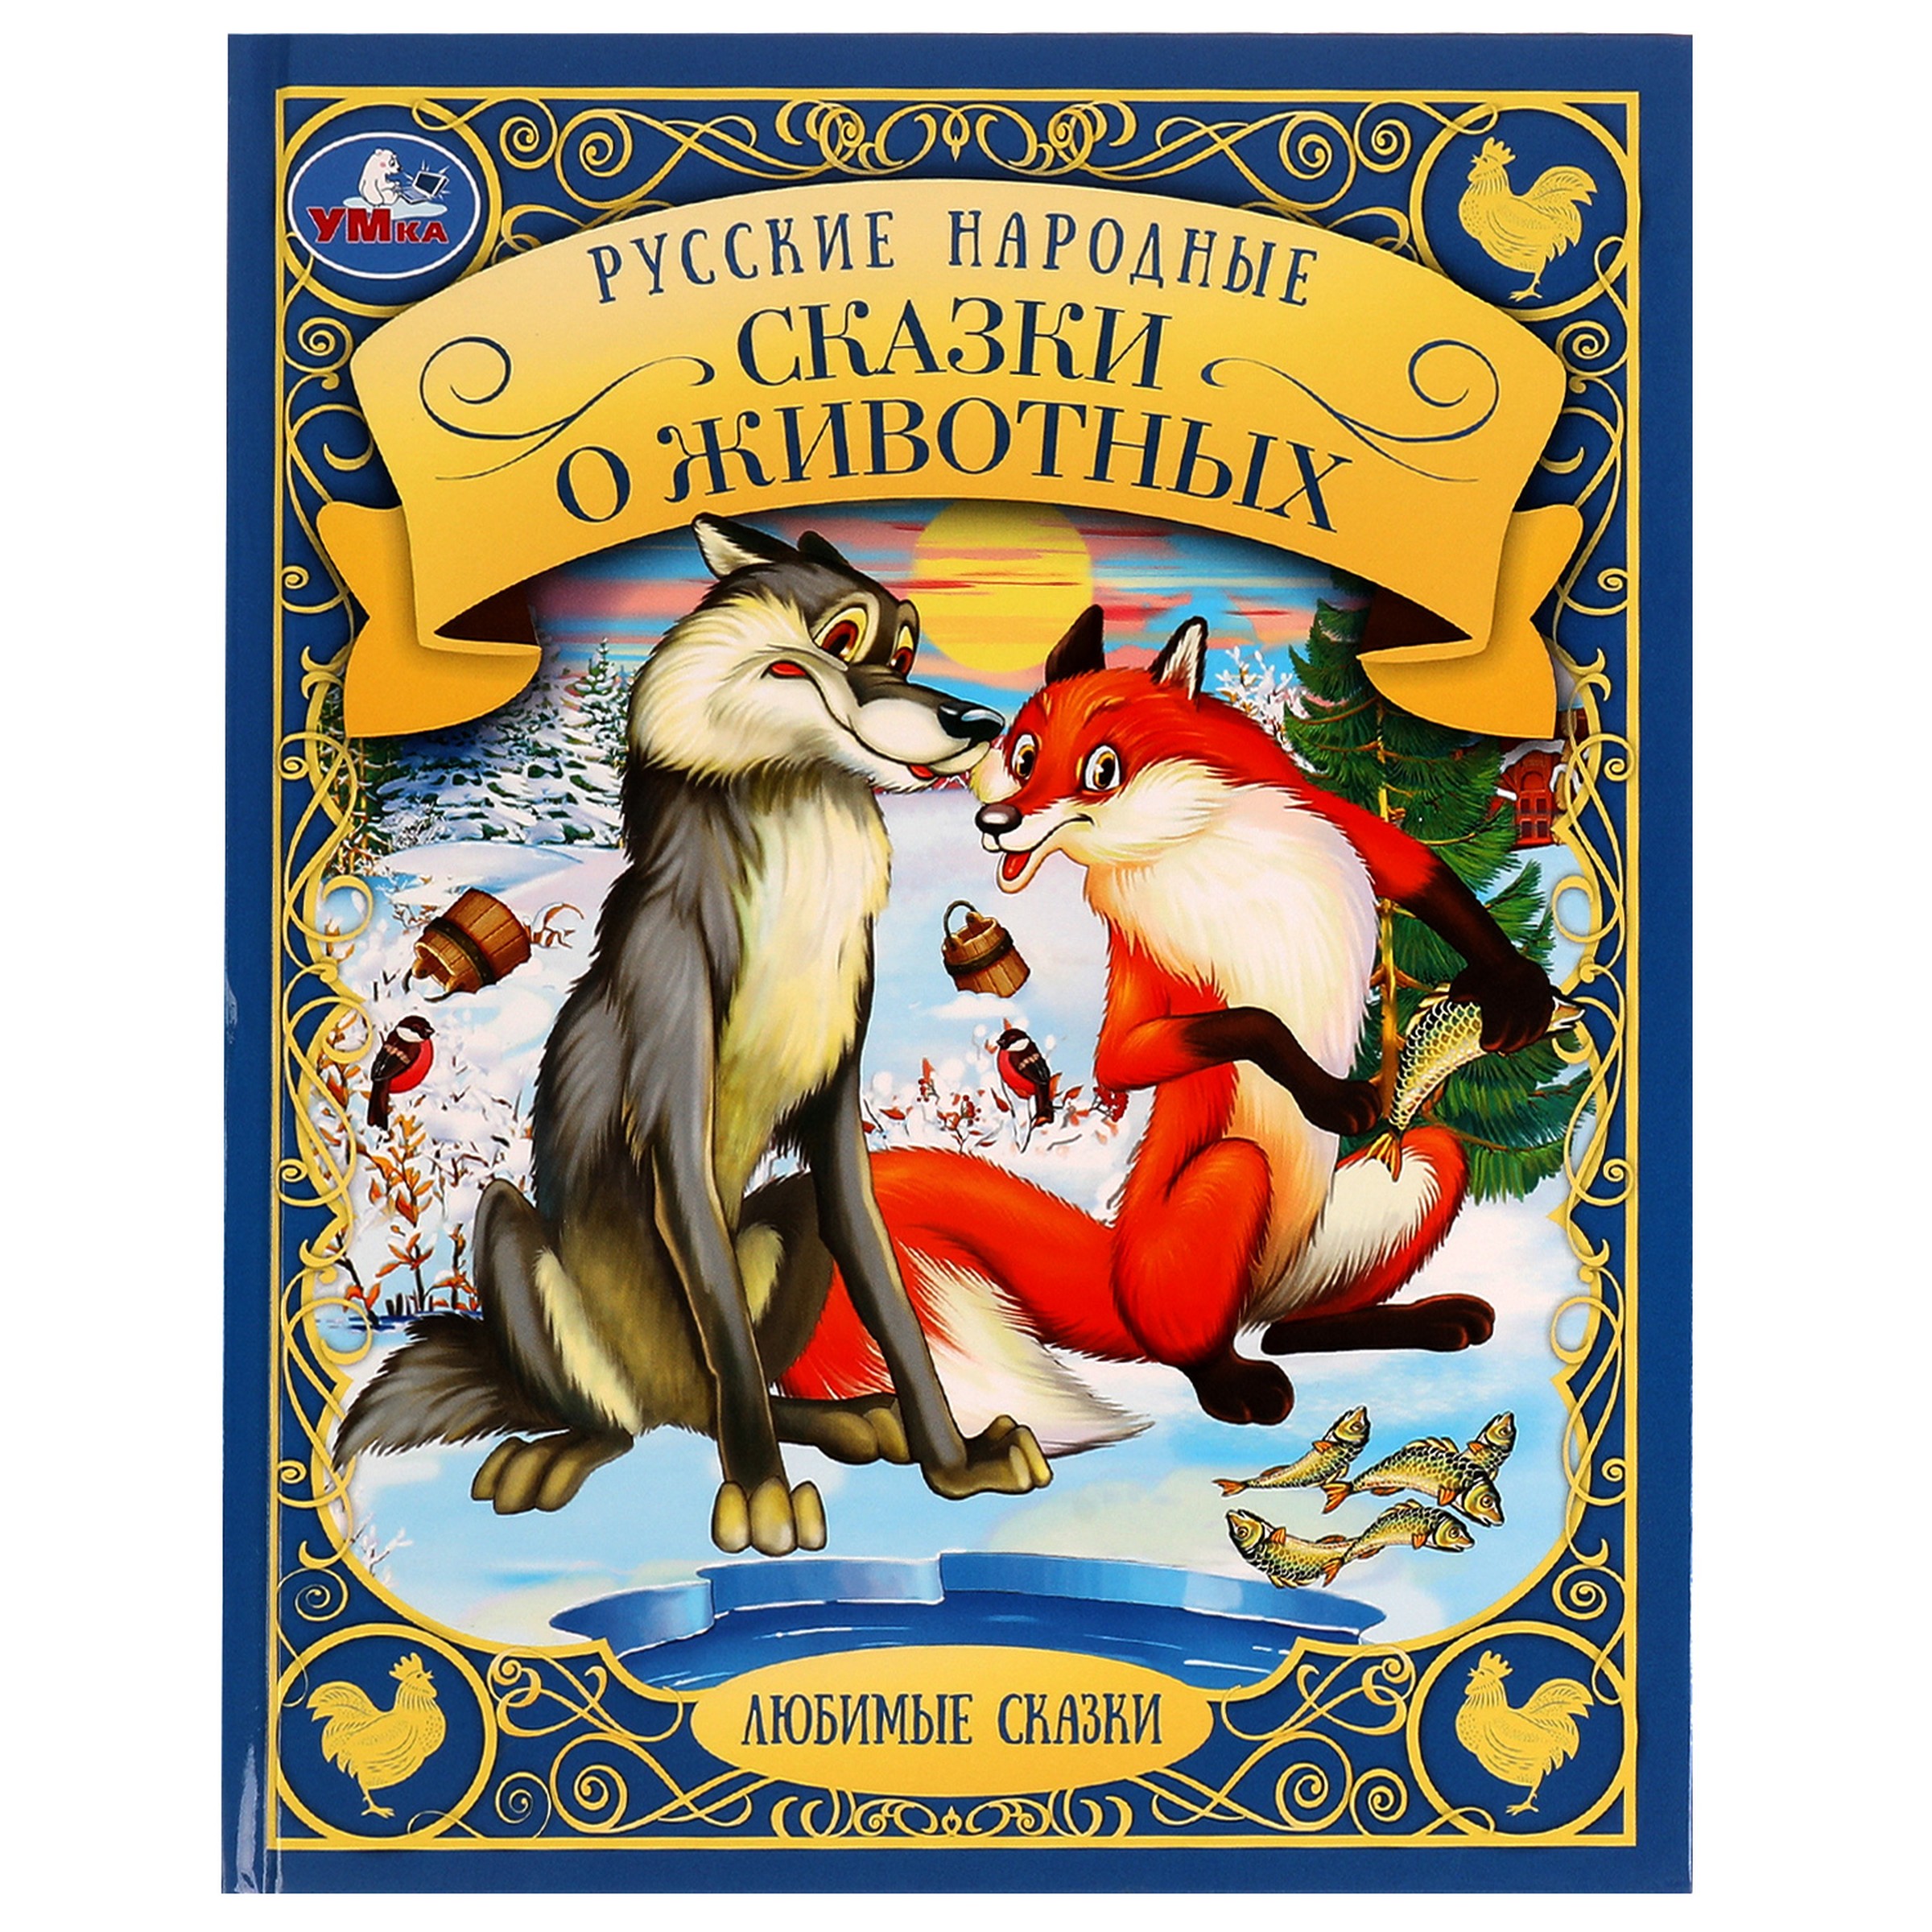 Любимые сказки. Русские народные сказки о животных русские народные сказки о животных